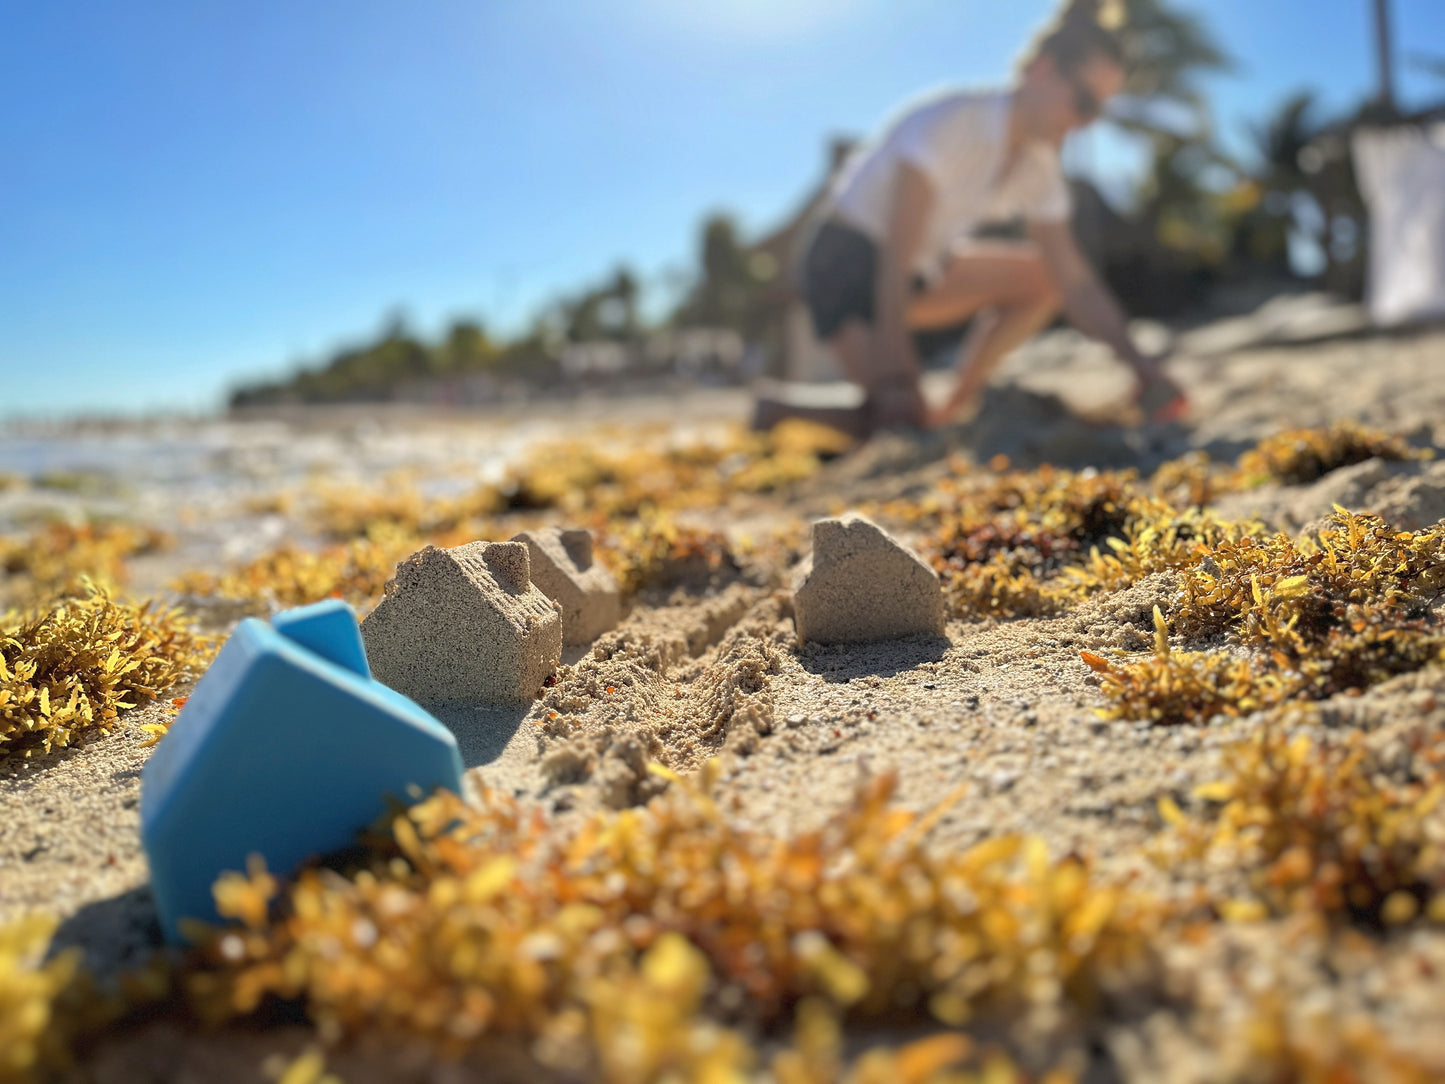 House Sand Mold, Beach Toys for Kids, Sensory Play Summer Toys